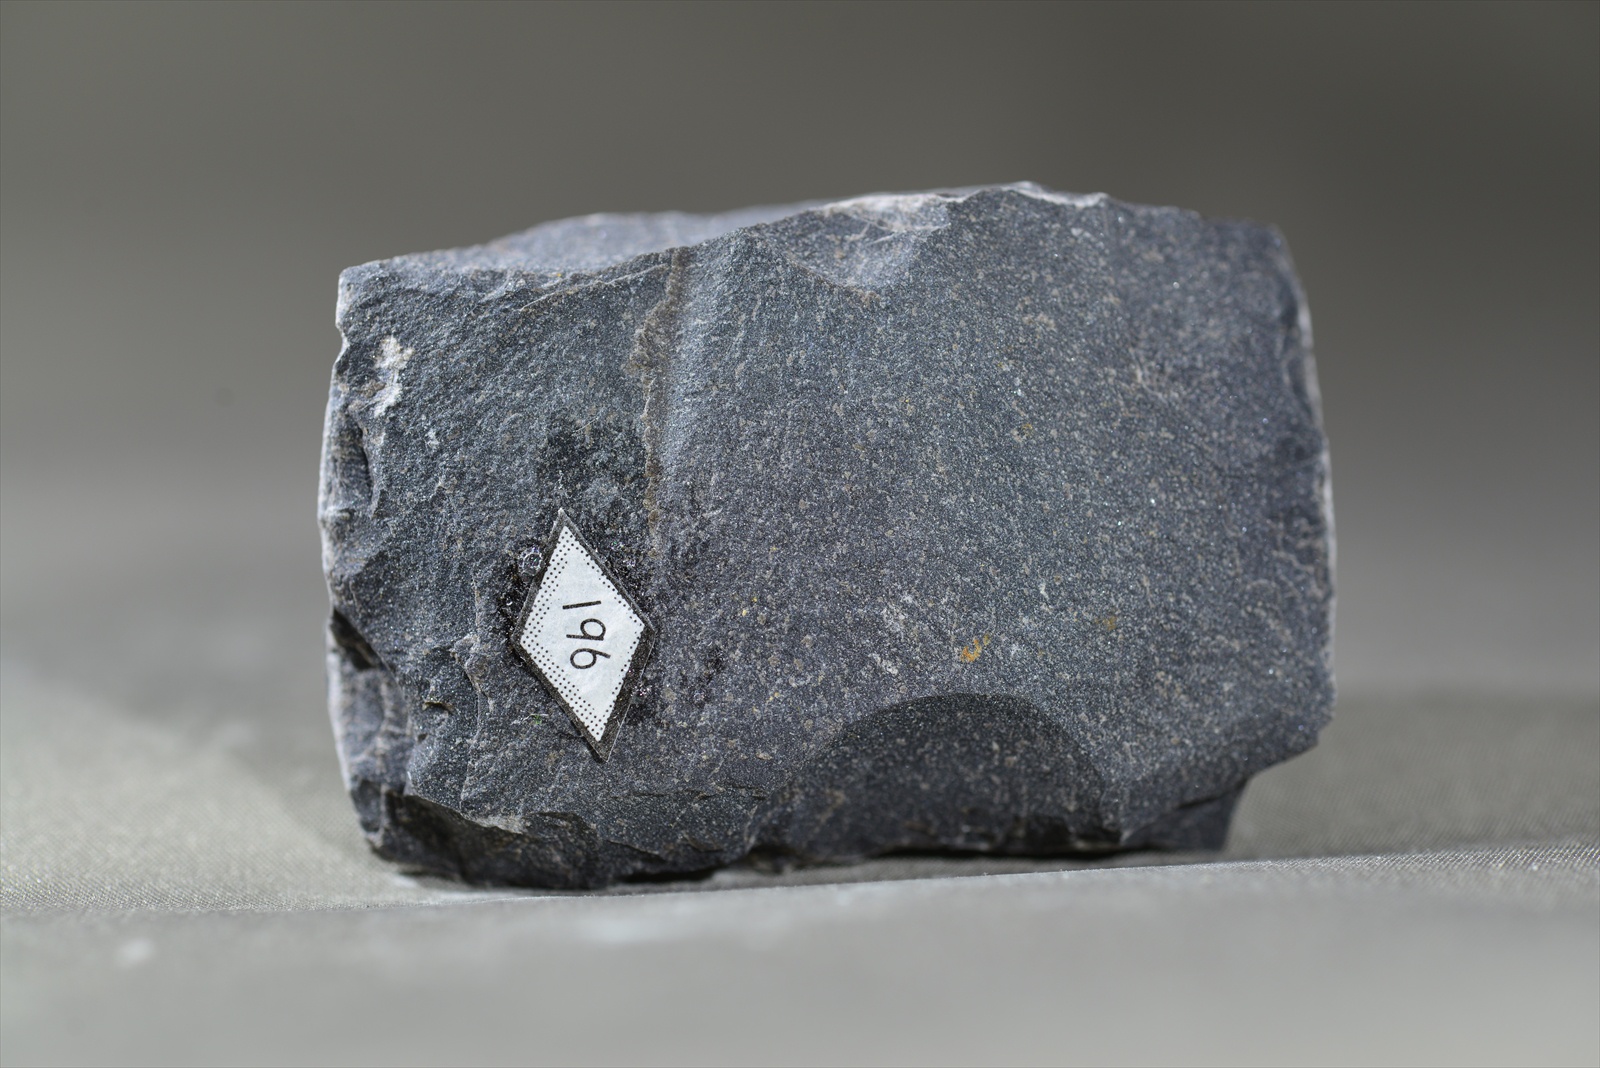 斜方輝石黒雲母ホルンフェルス(Orthopyroxene-biotite hornfels)